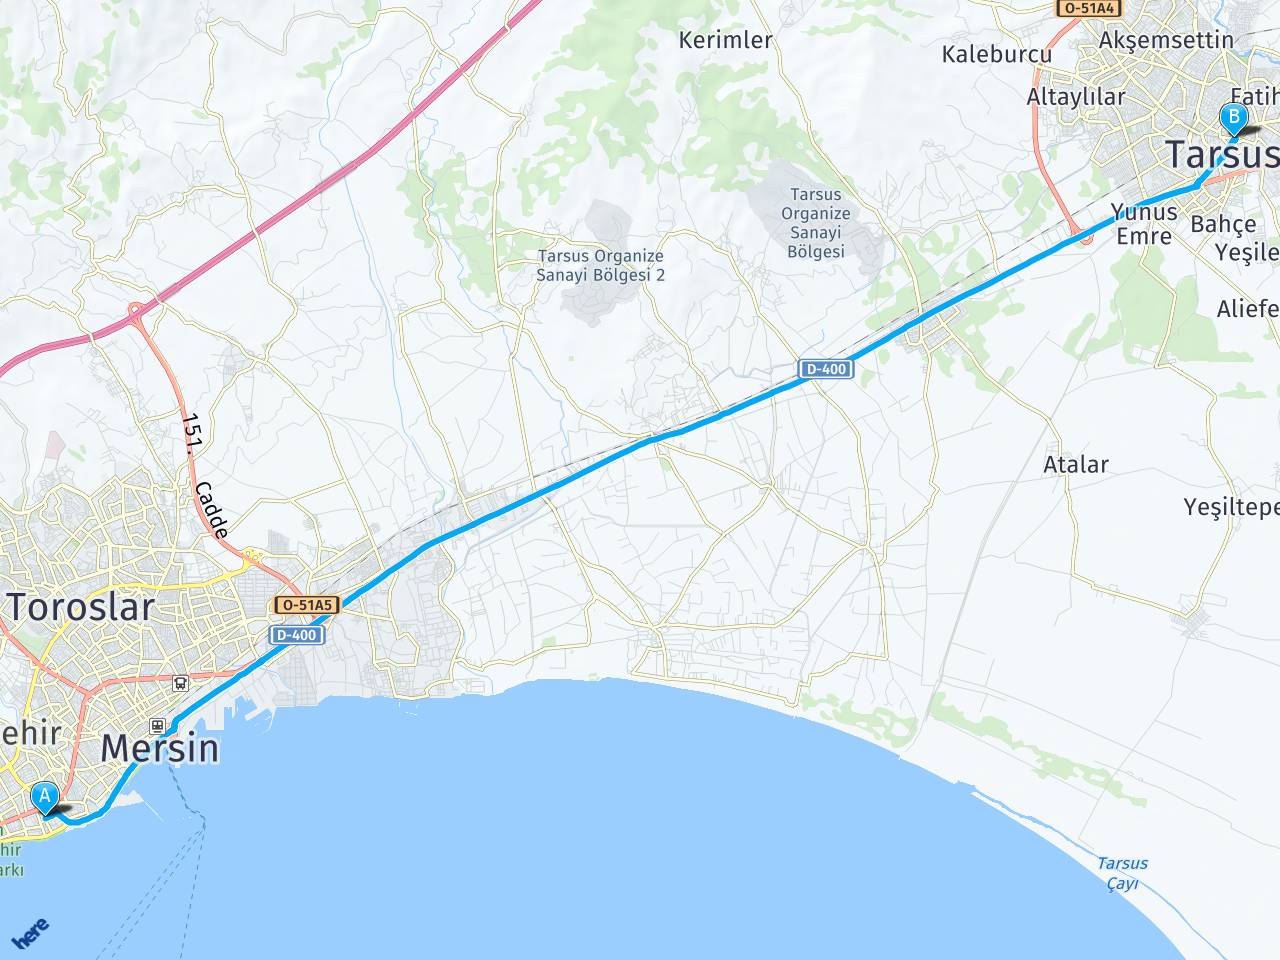 Palmiye Mahallesi 1219 Sokak Selimbey Apt 24/a, 33010 Yenişehir/mersin tarsus mersin haritası